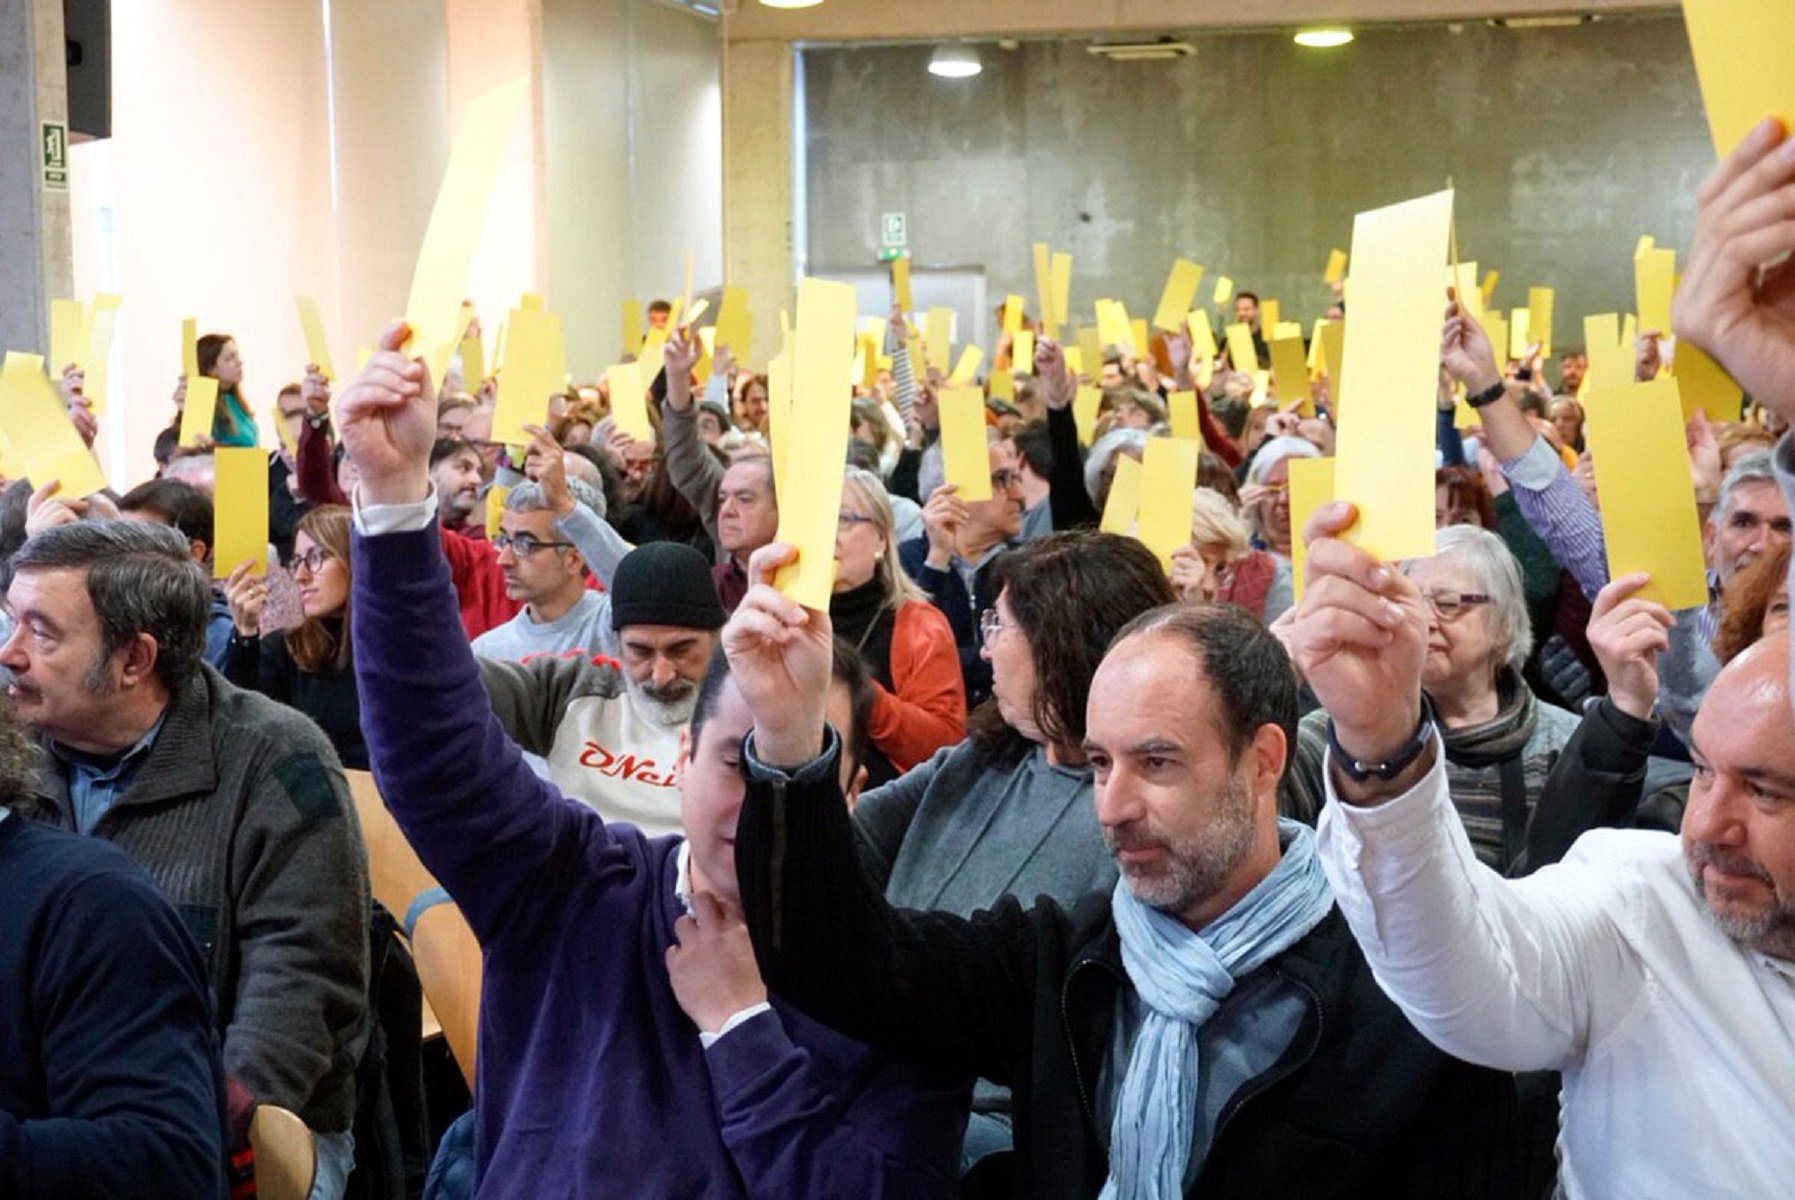 Primàries Catalunya se presentará a las elecciones al Parlament